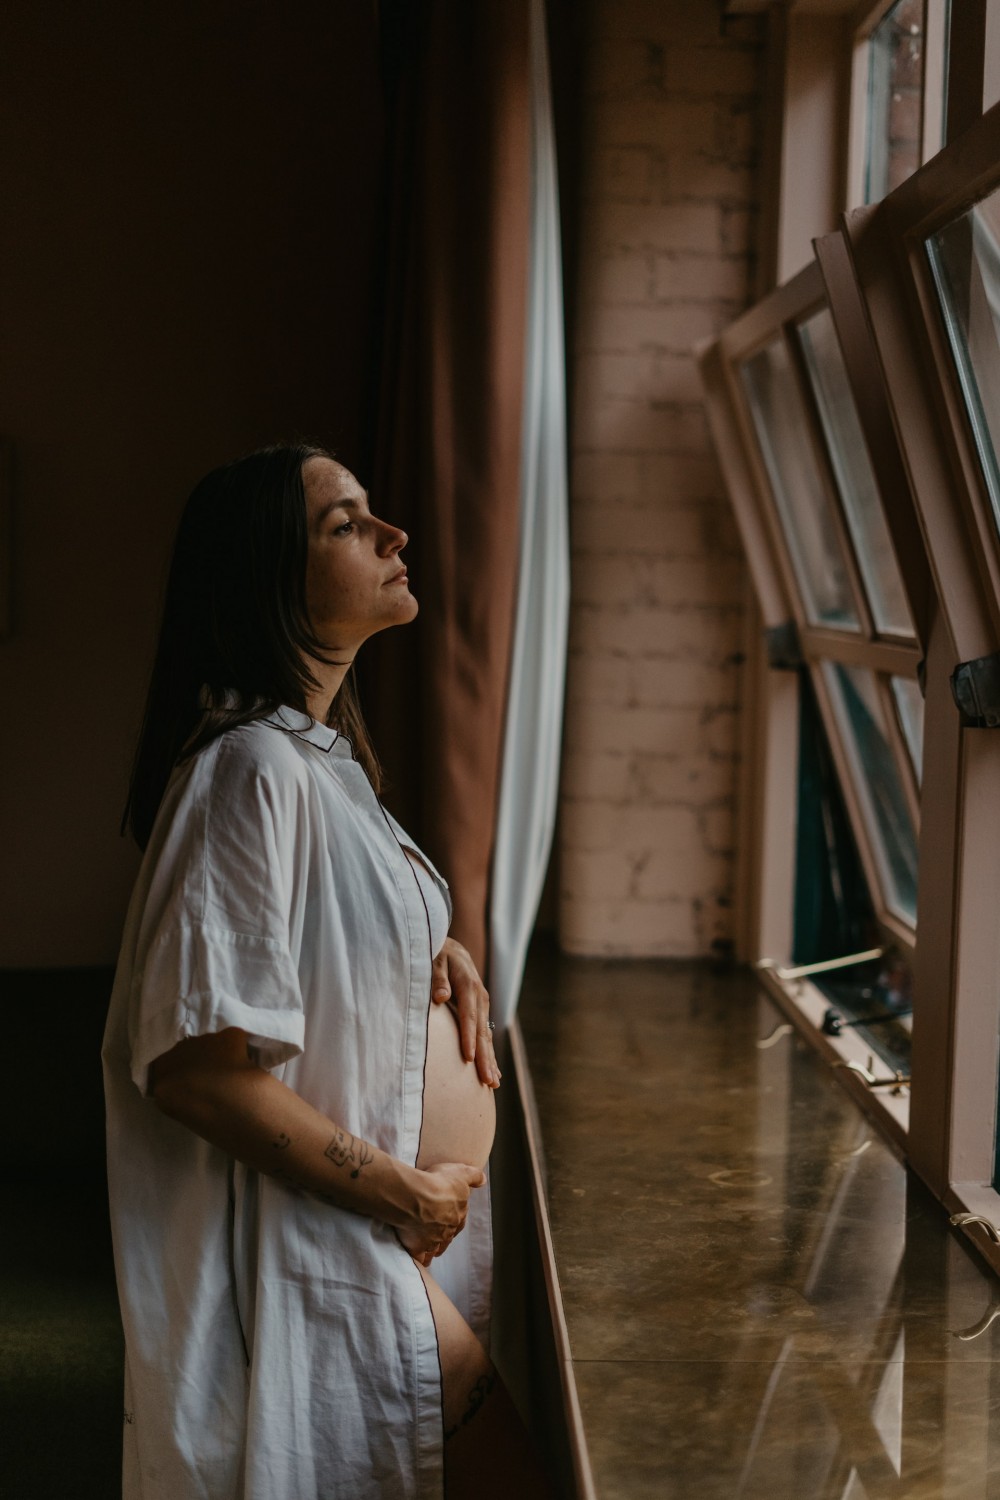 Планирование беременности: 8 важных моментов, о которых стоит знать